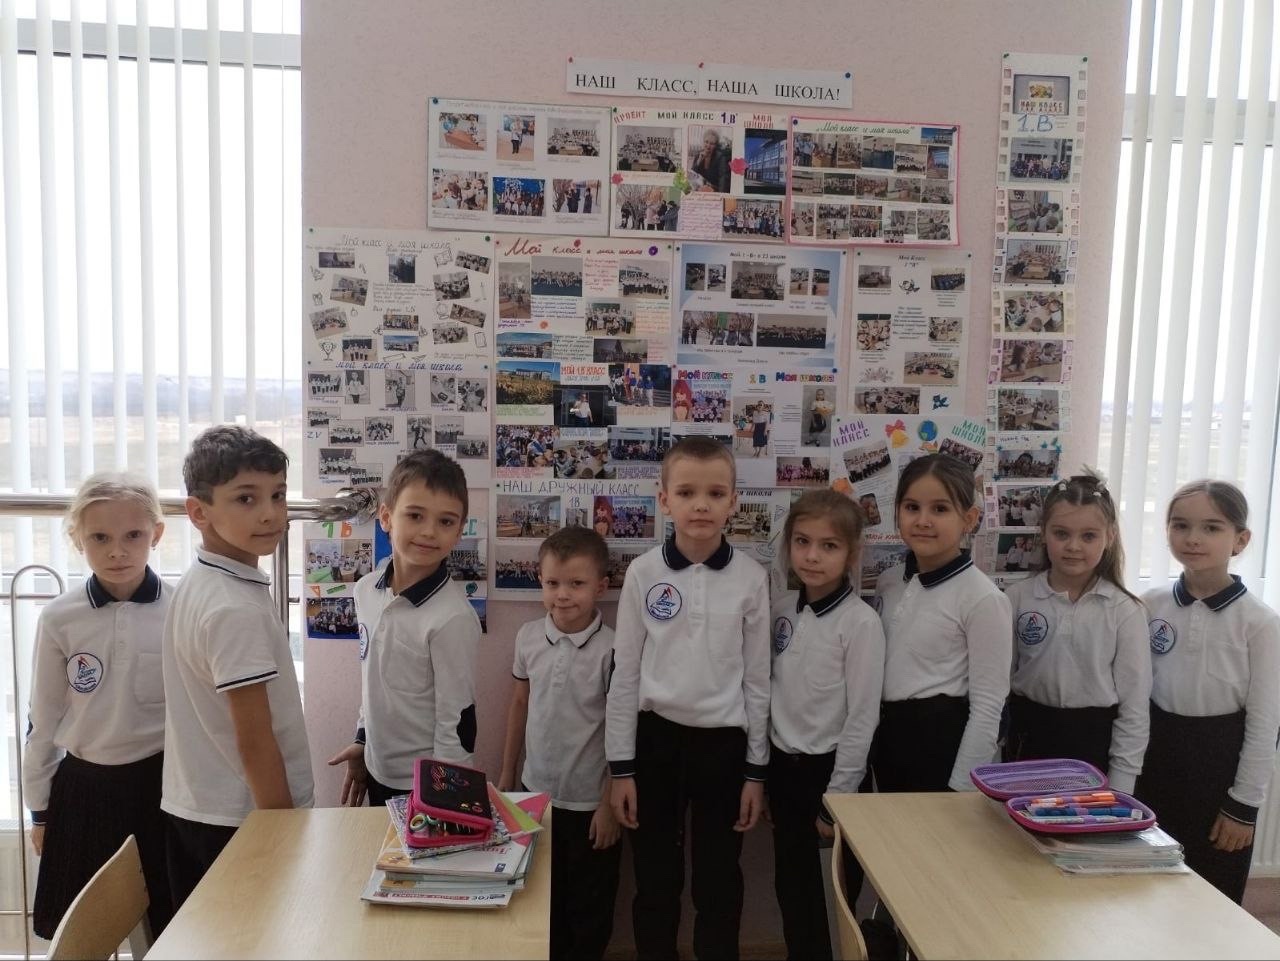 МБОУ СОШ № 23 Михайловск Мой класс и моя школа подготовили ребята из 1 В класса